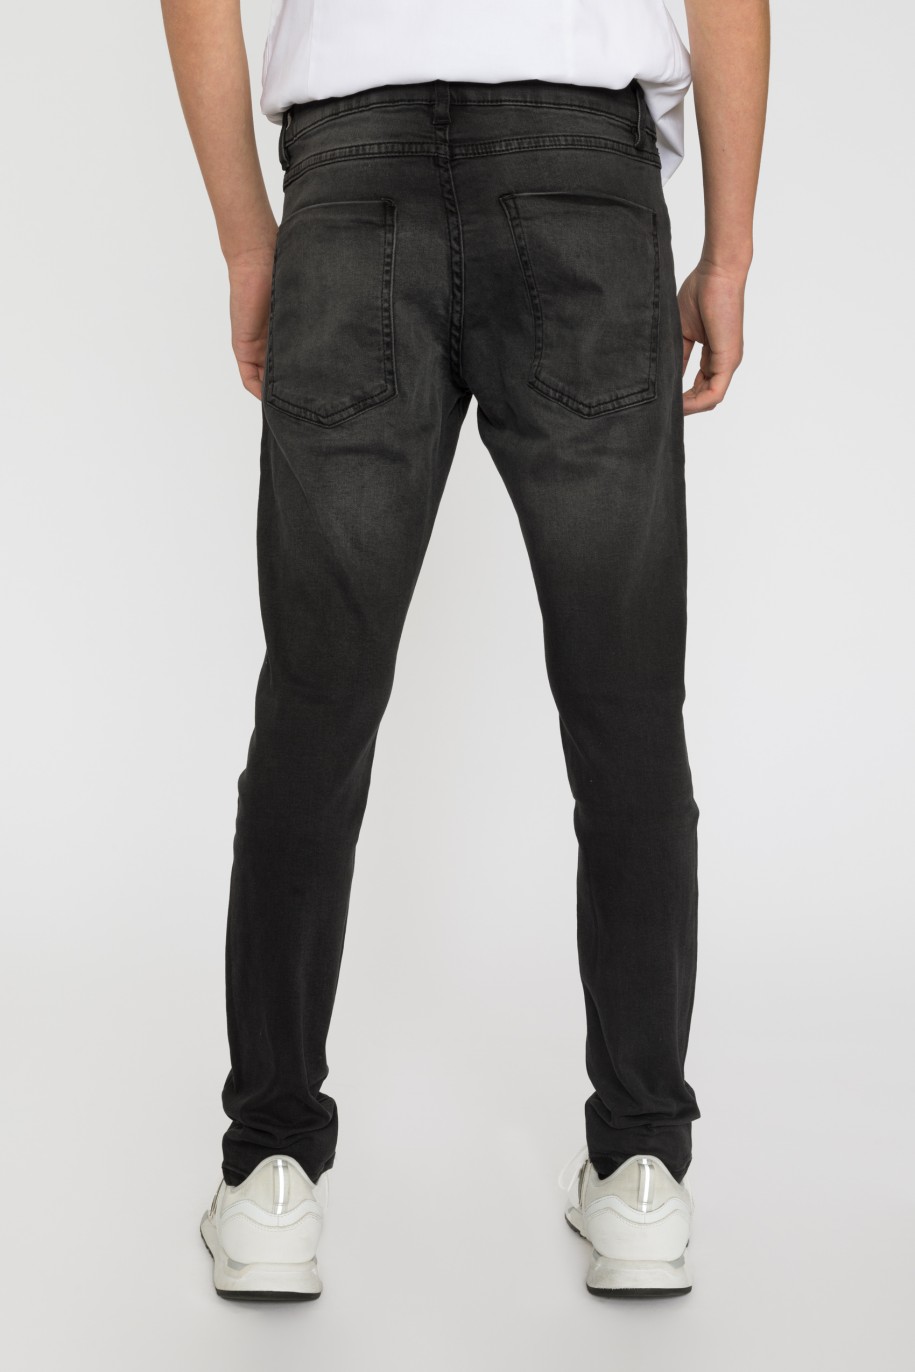 Czarne Jeansowe spodnie dla chłopaka REGURAL - 33439